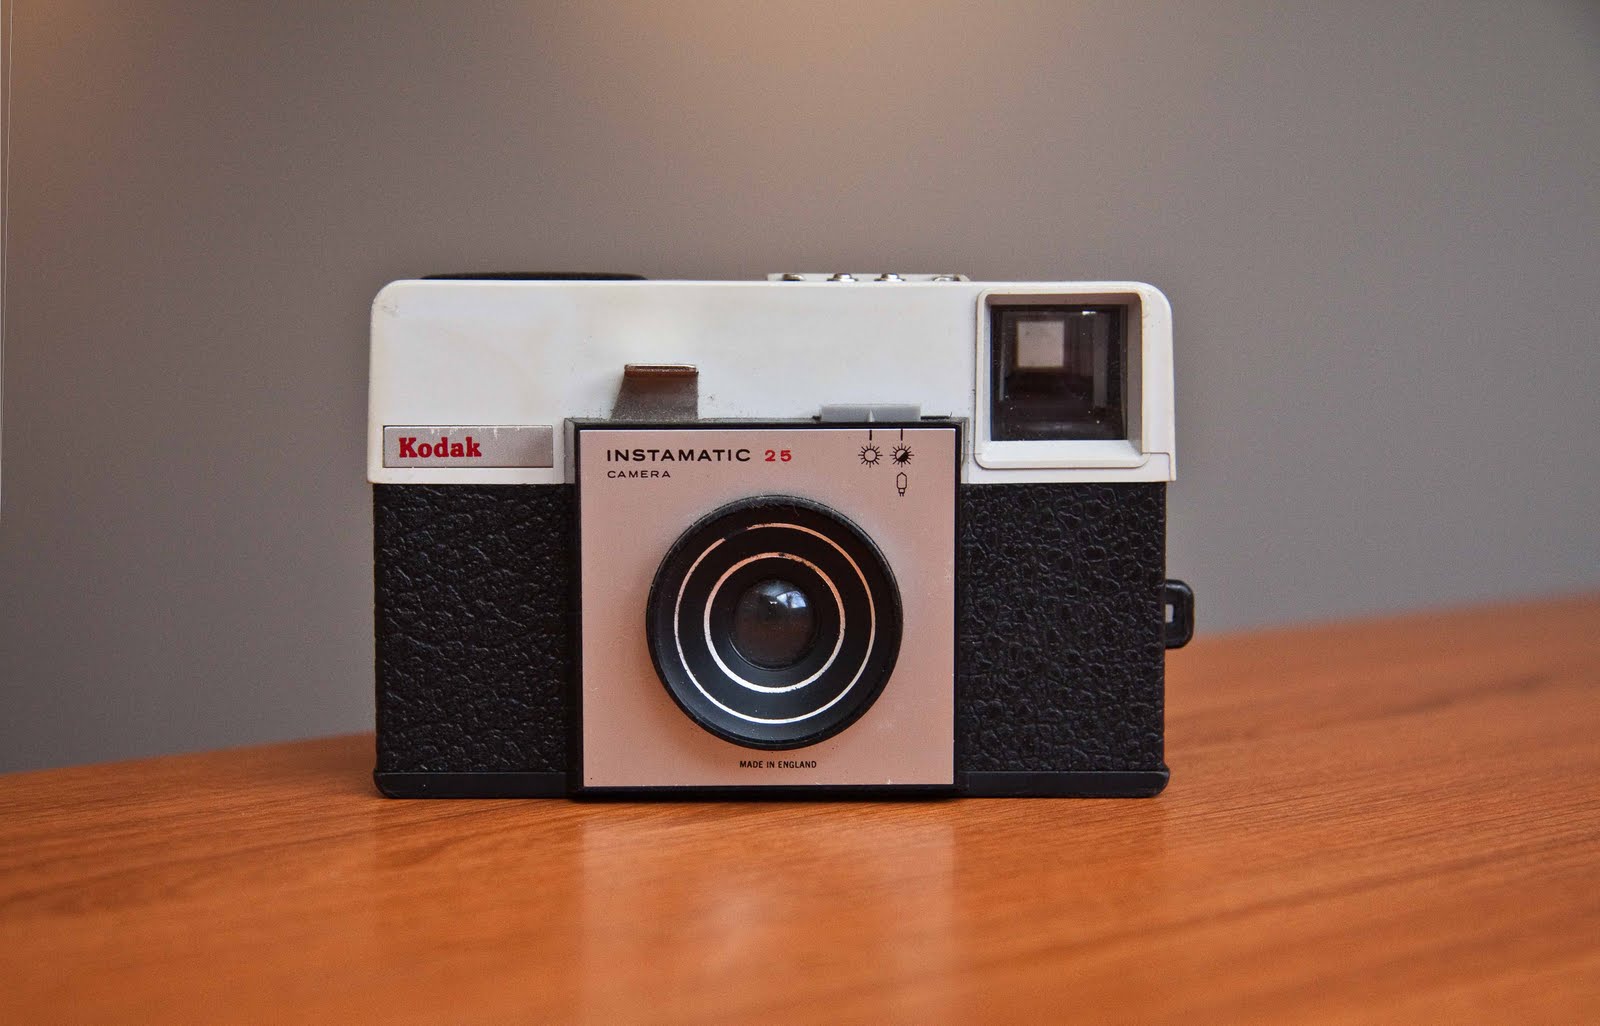 Old Kodak Cameras